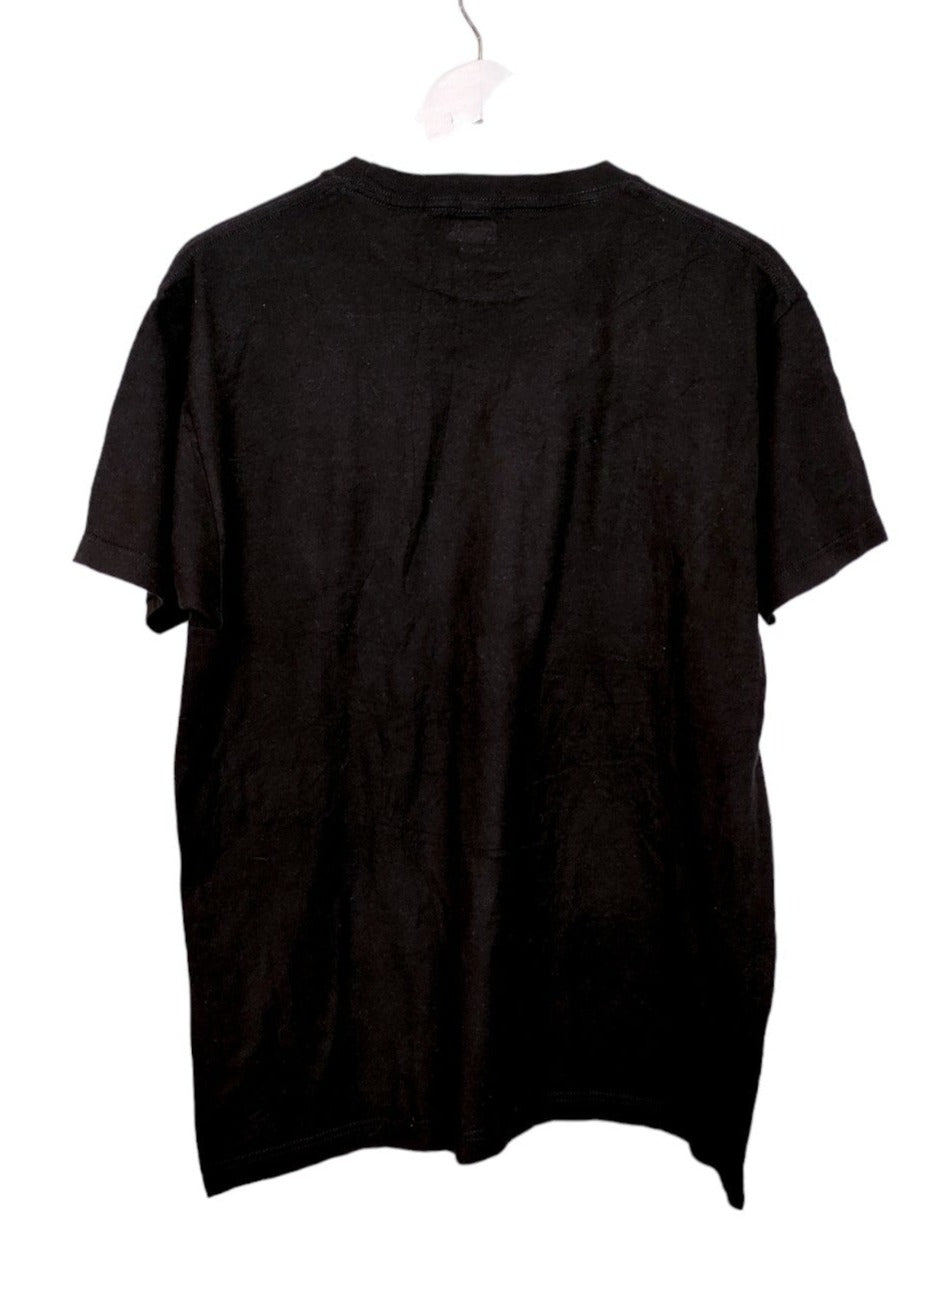 Ανδρική Μπλούζα - T- Shirt Doctor Strange by MARVEL σε Μαύρο χρώμα (Large)